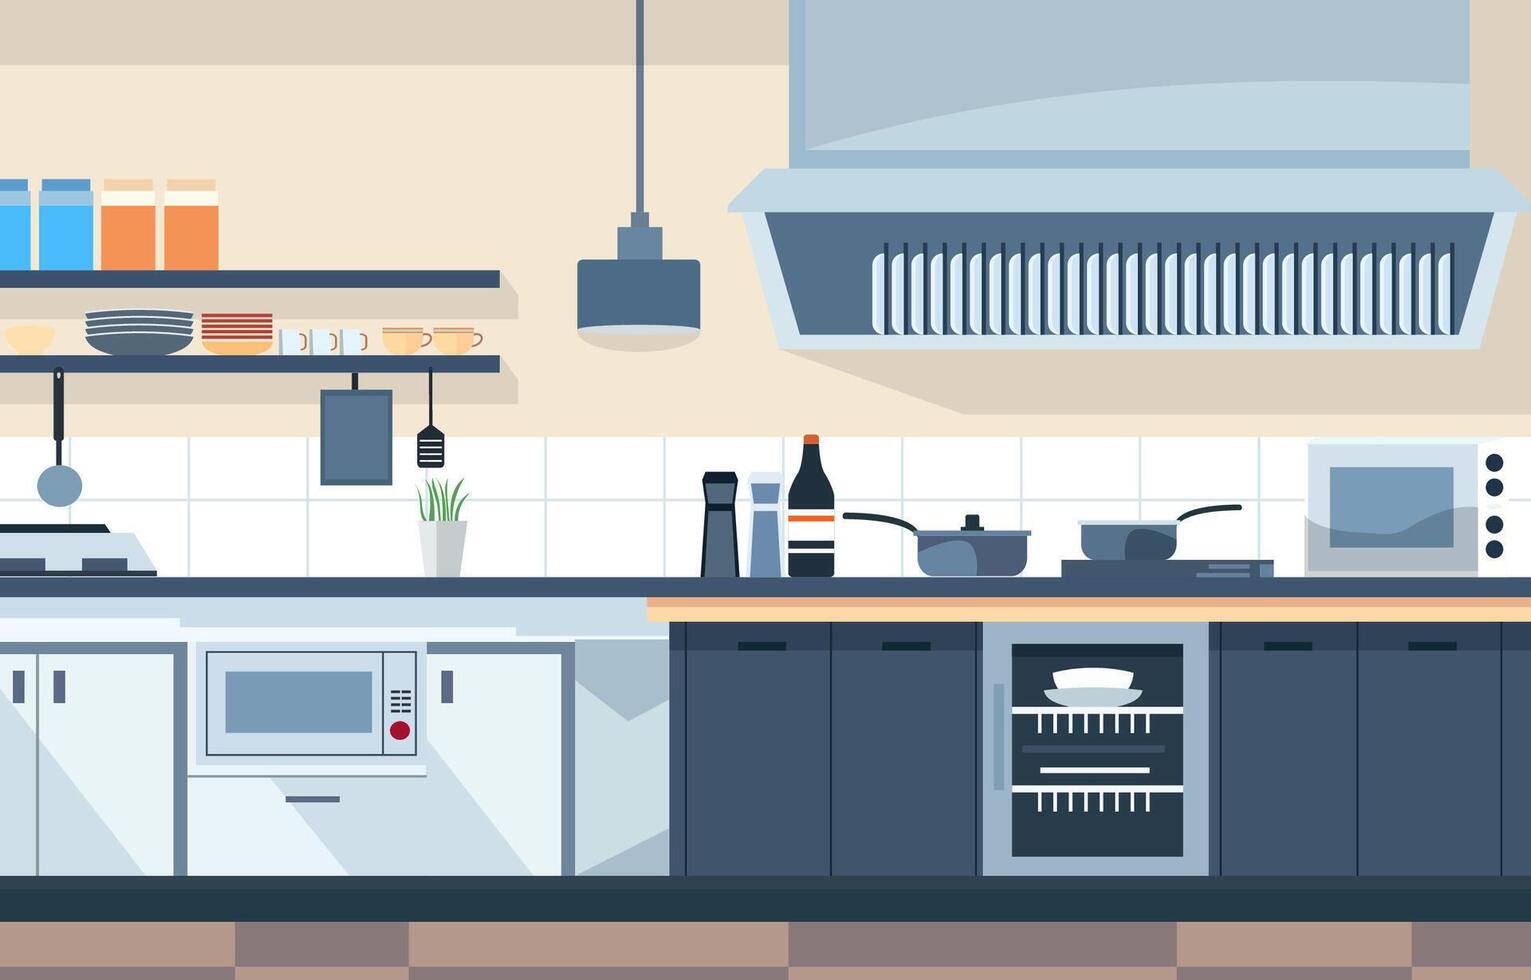 plano Projeto do moderno cozinha interior dentro restaurante com armazenamento prateleiras e fogão vetor